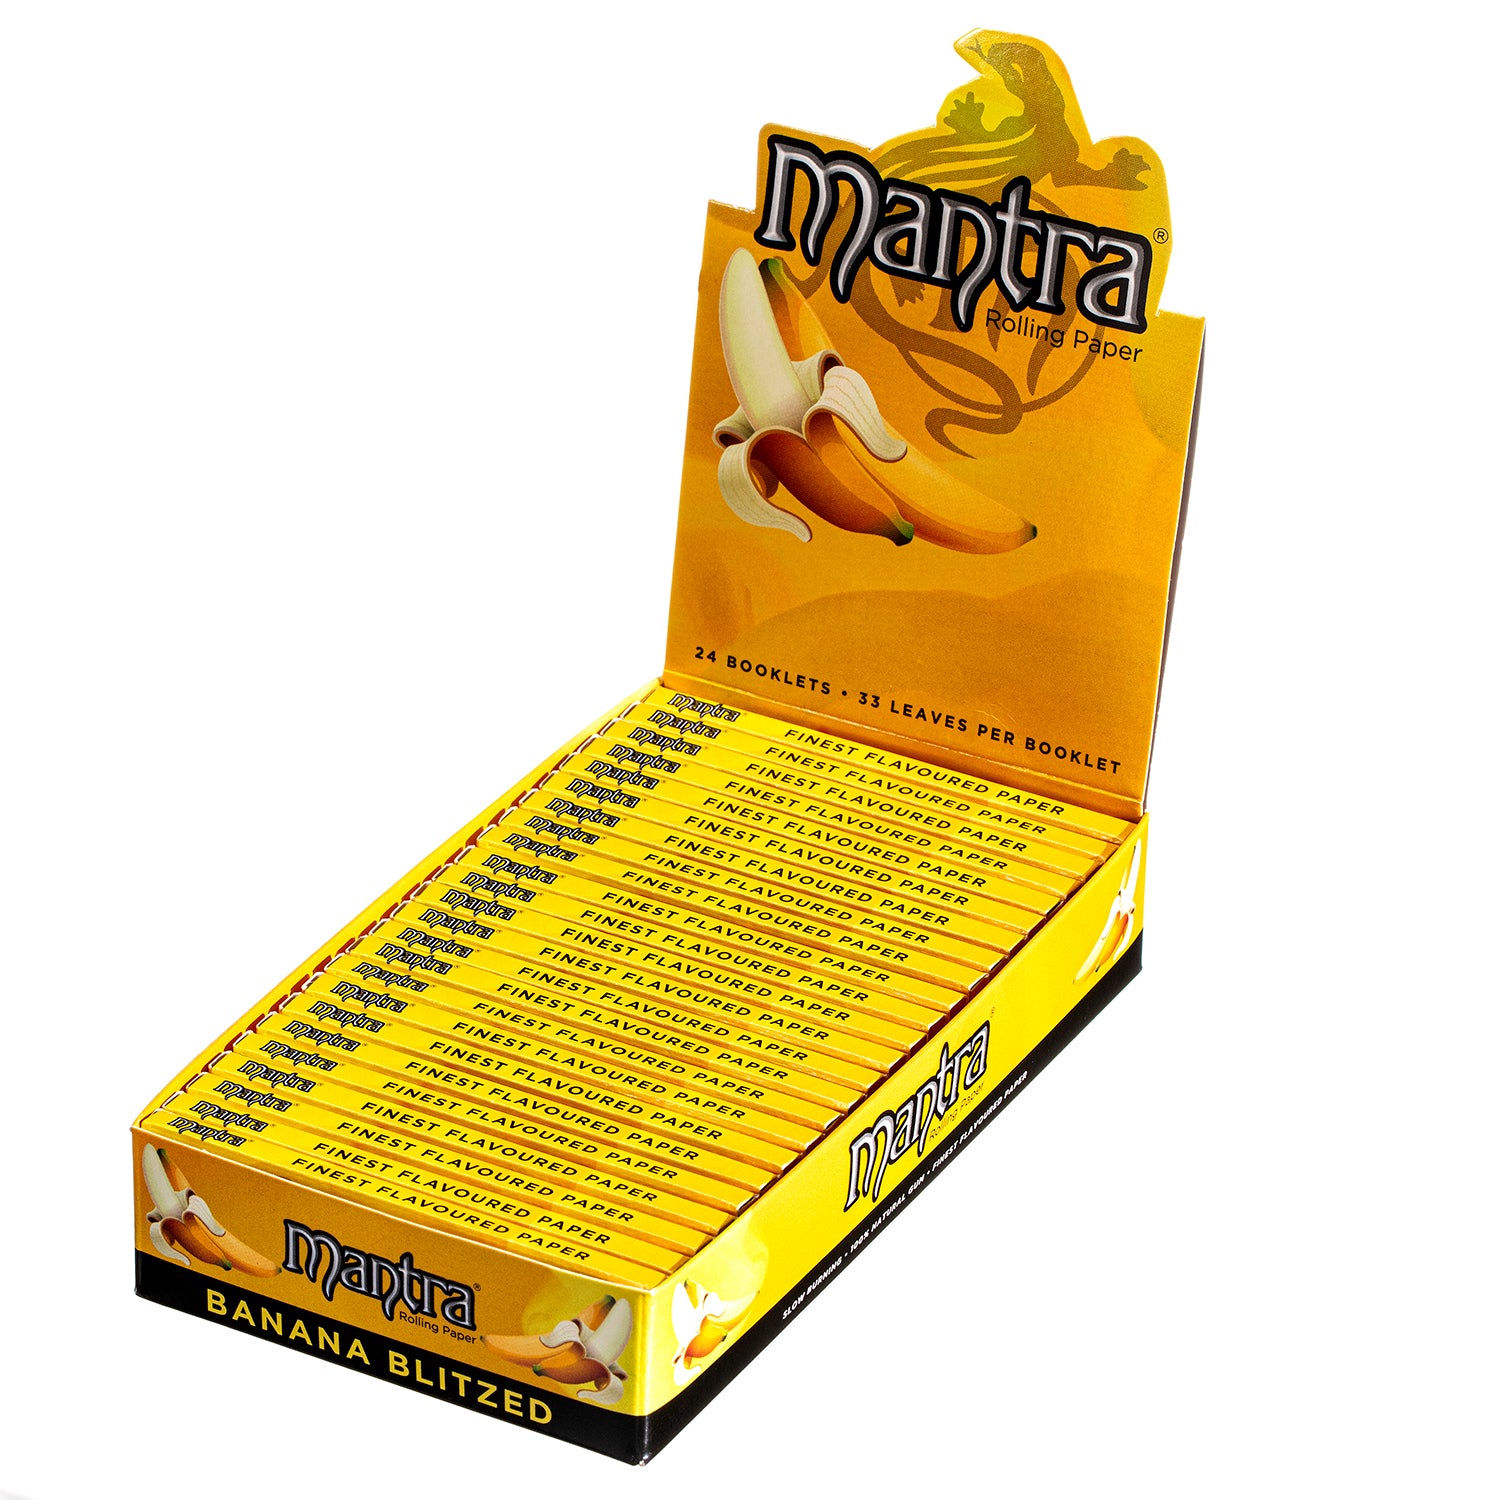 Mantra Banana Blitzed Carton - 24 Booklets